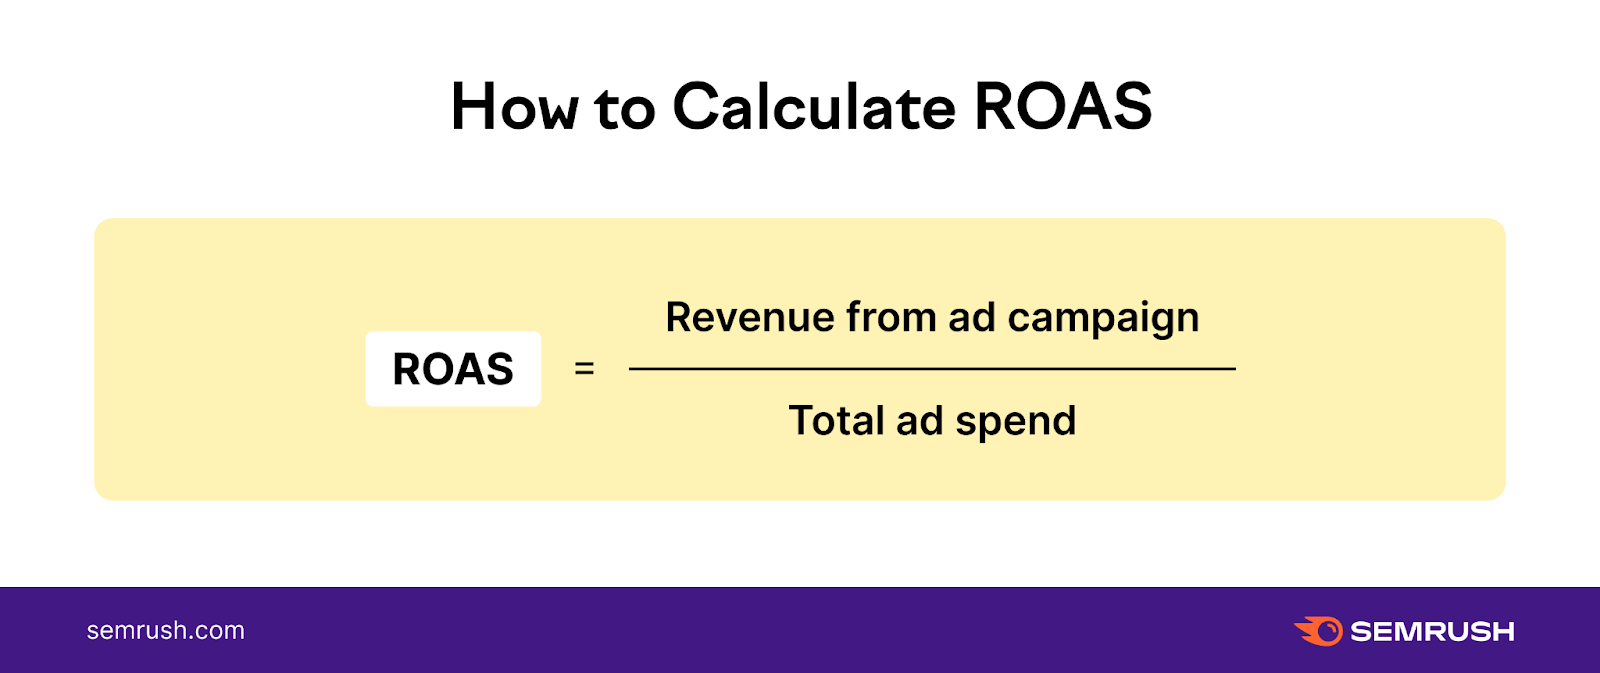 an image showing ROAS formula: ROAS = Revenue / Ad Spend